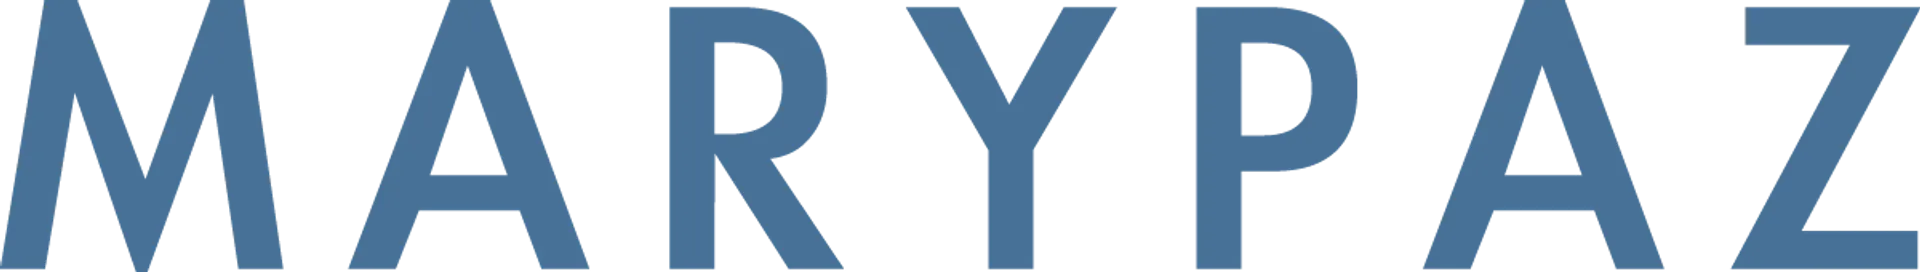 MARY PAZ logo